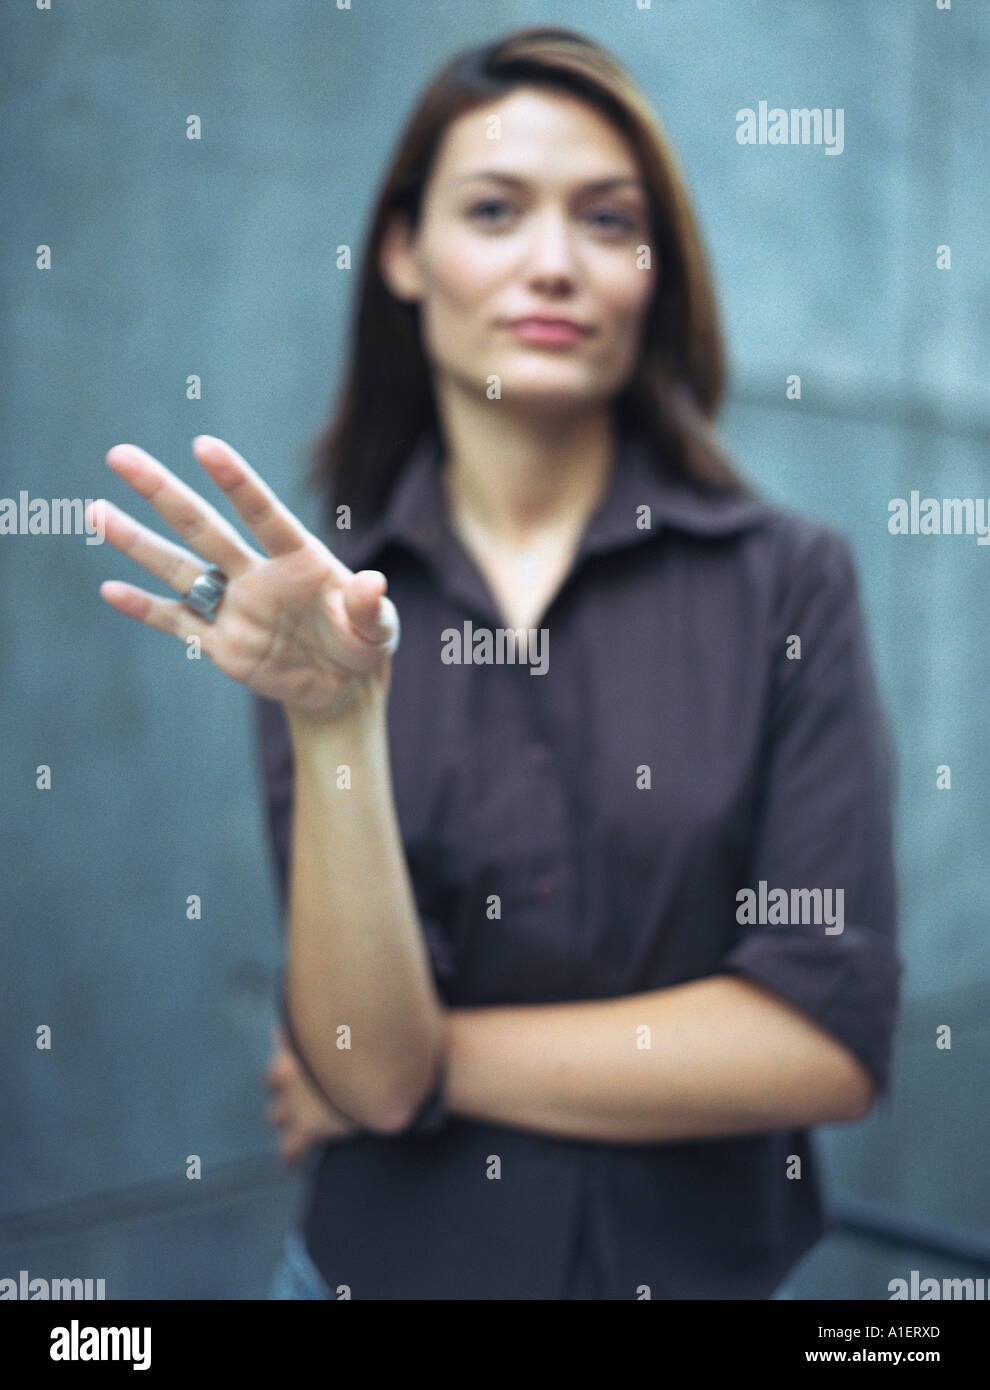 Woman gesturing, defocused Stock Photo